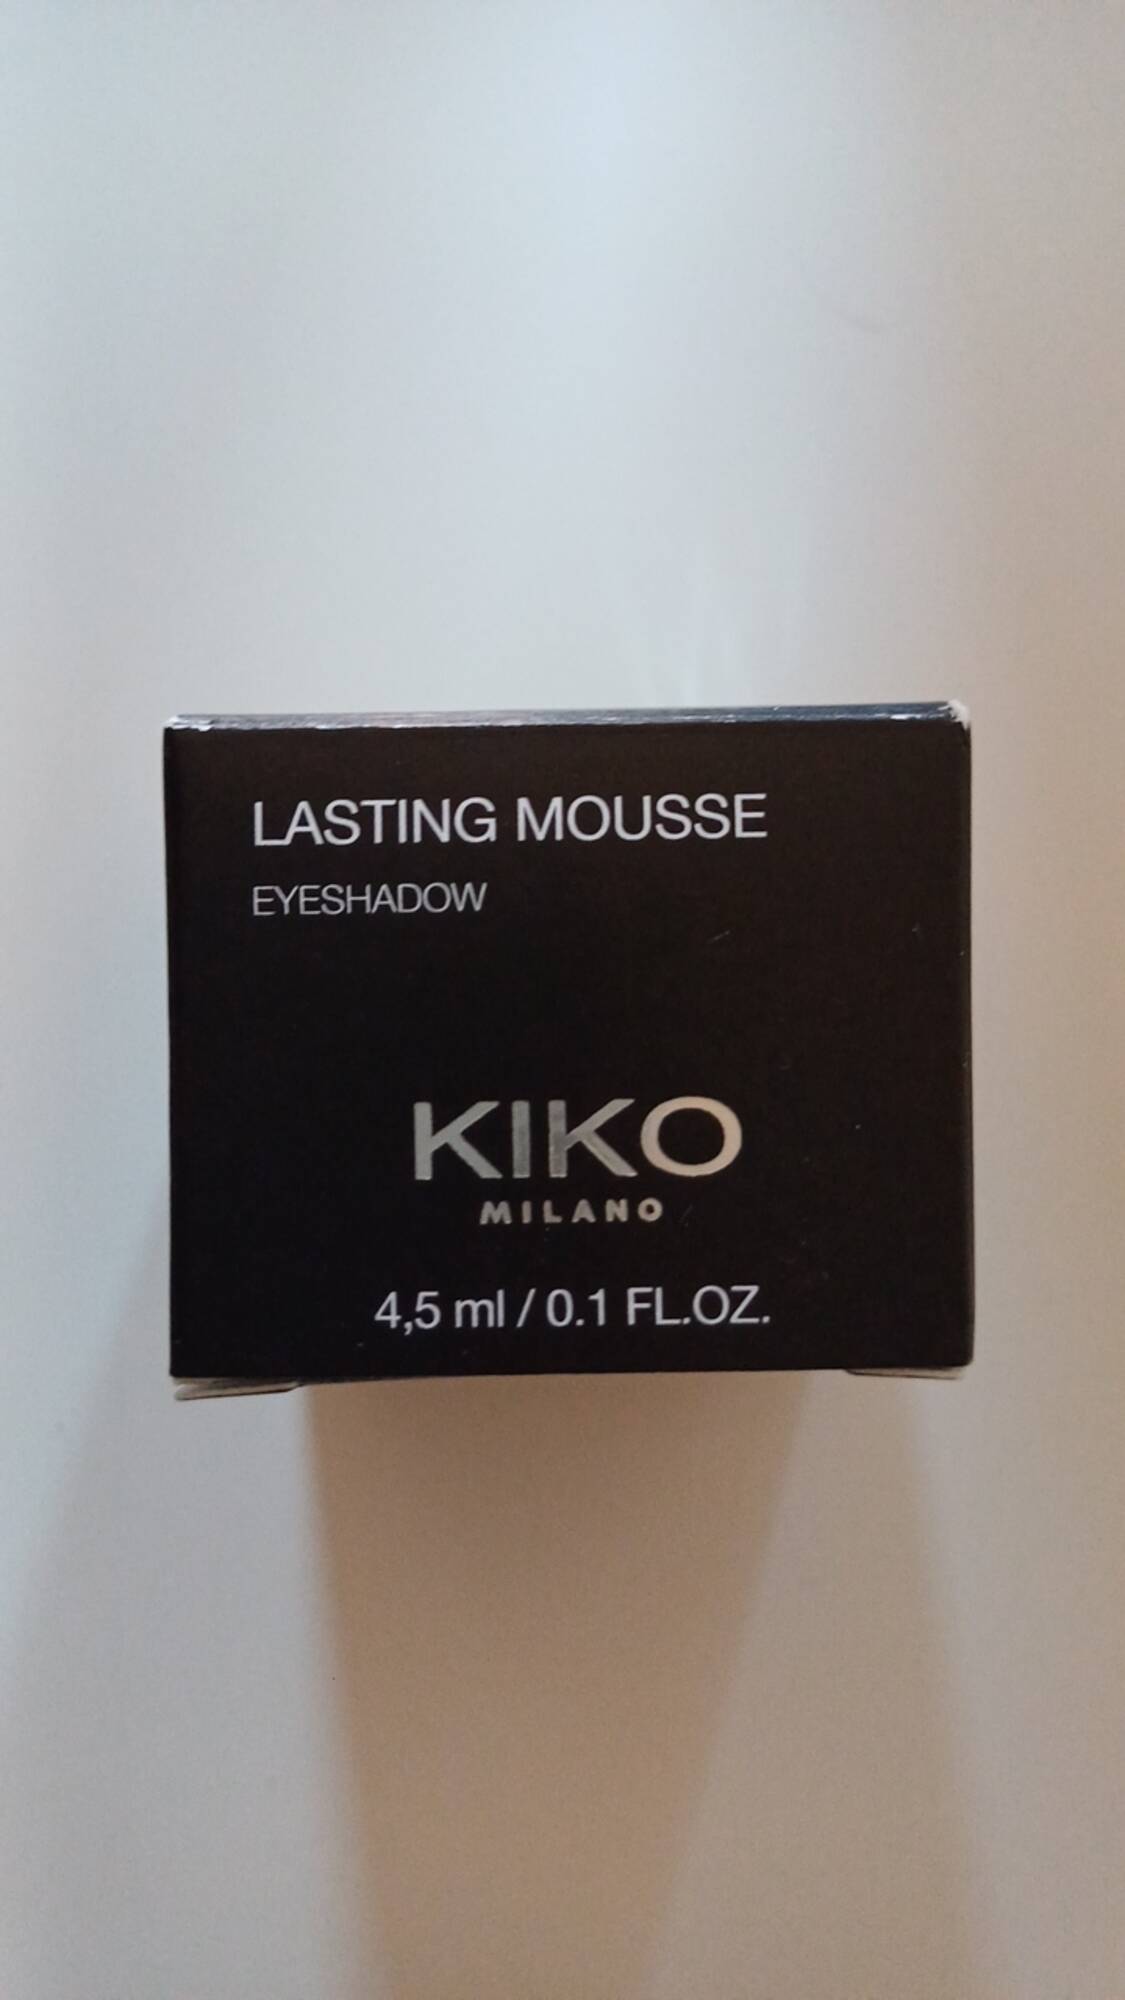 KIKO - Lasting mousse - Eyeshadow